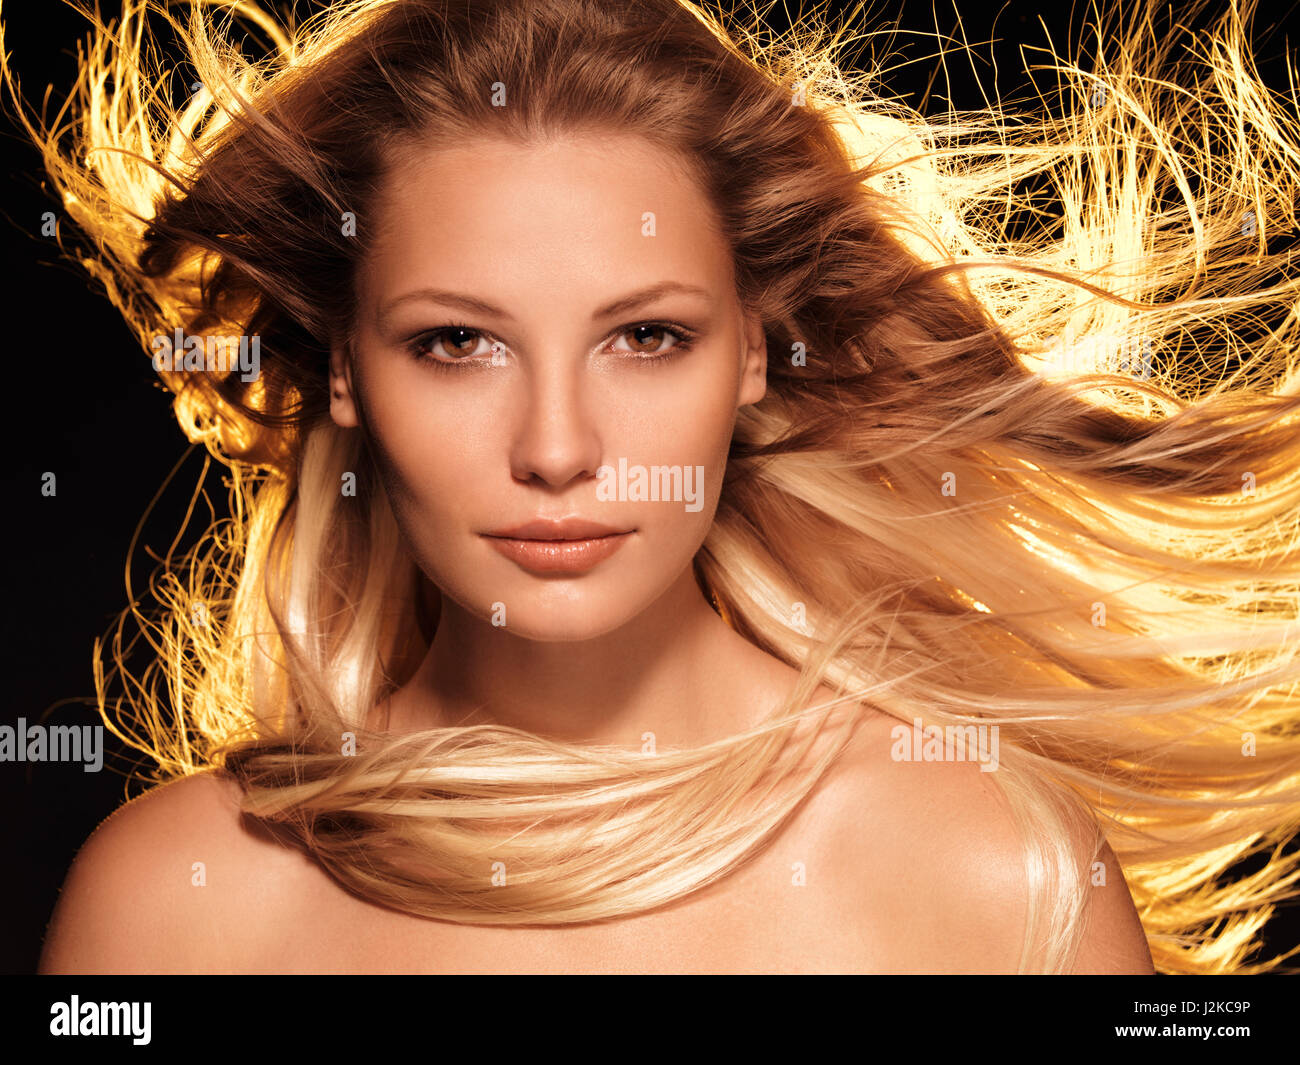 Licence et tirages sur MaximImages.com - Beauté visage portrait d'une femme avec de longs cheveux blond doré brillant Banque D'Images